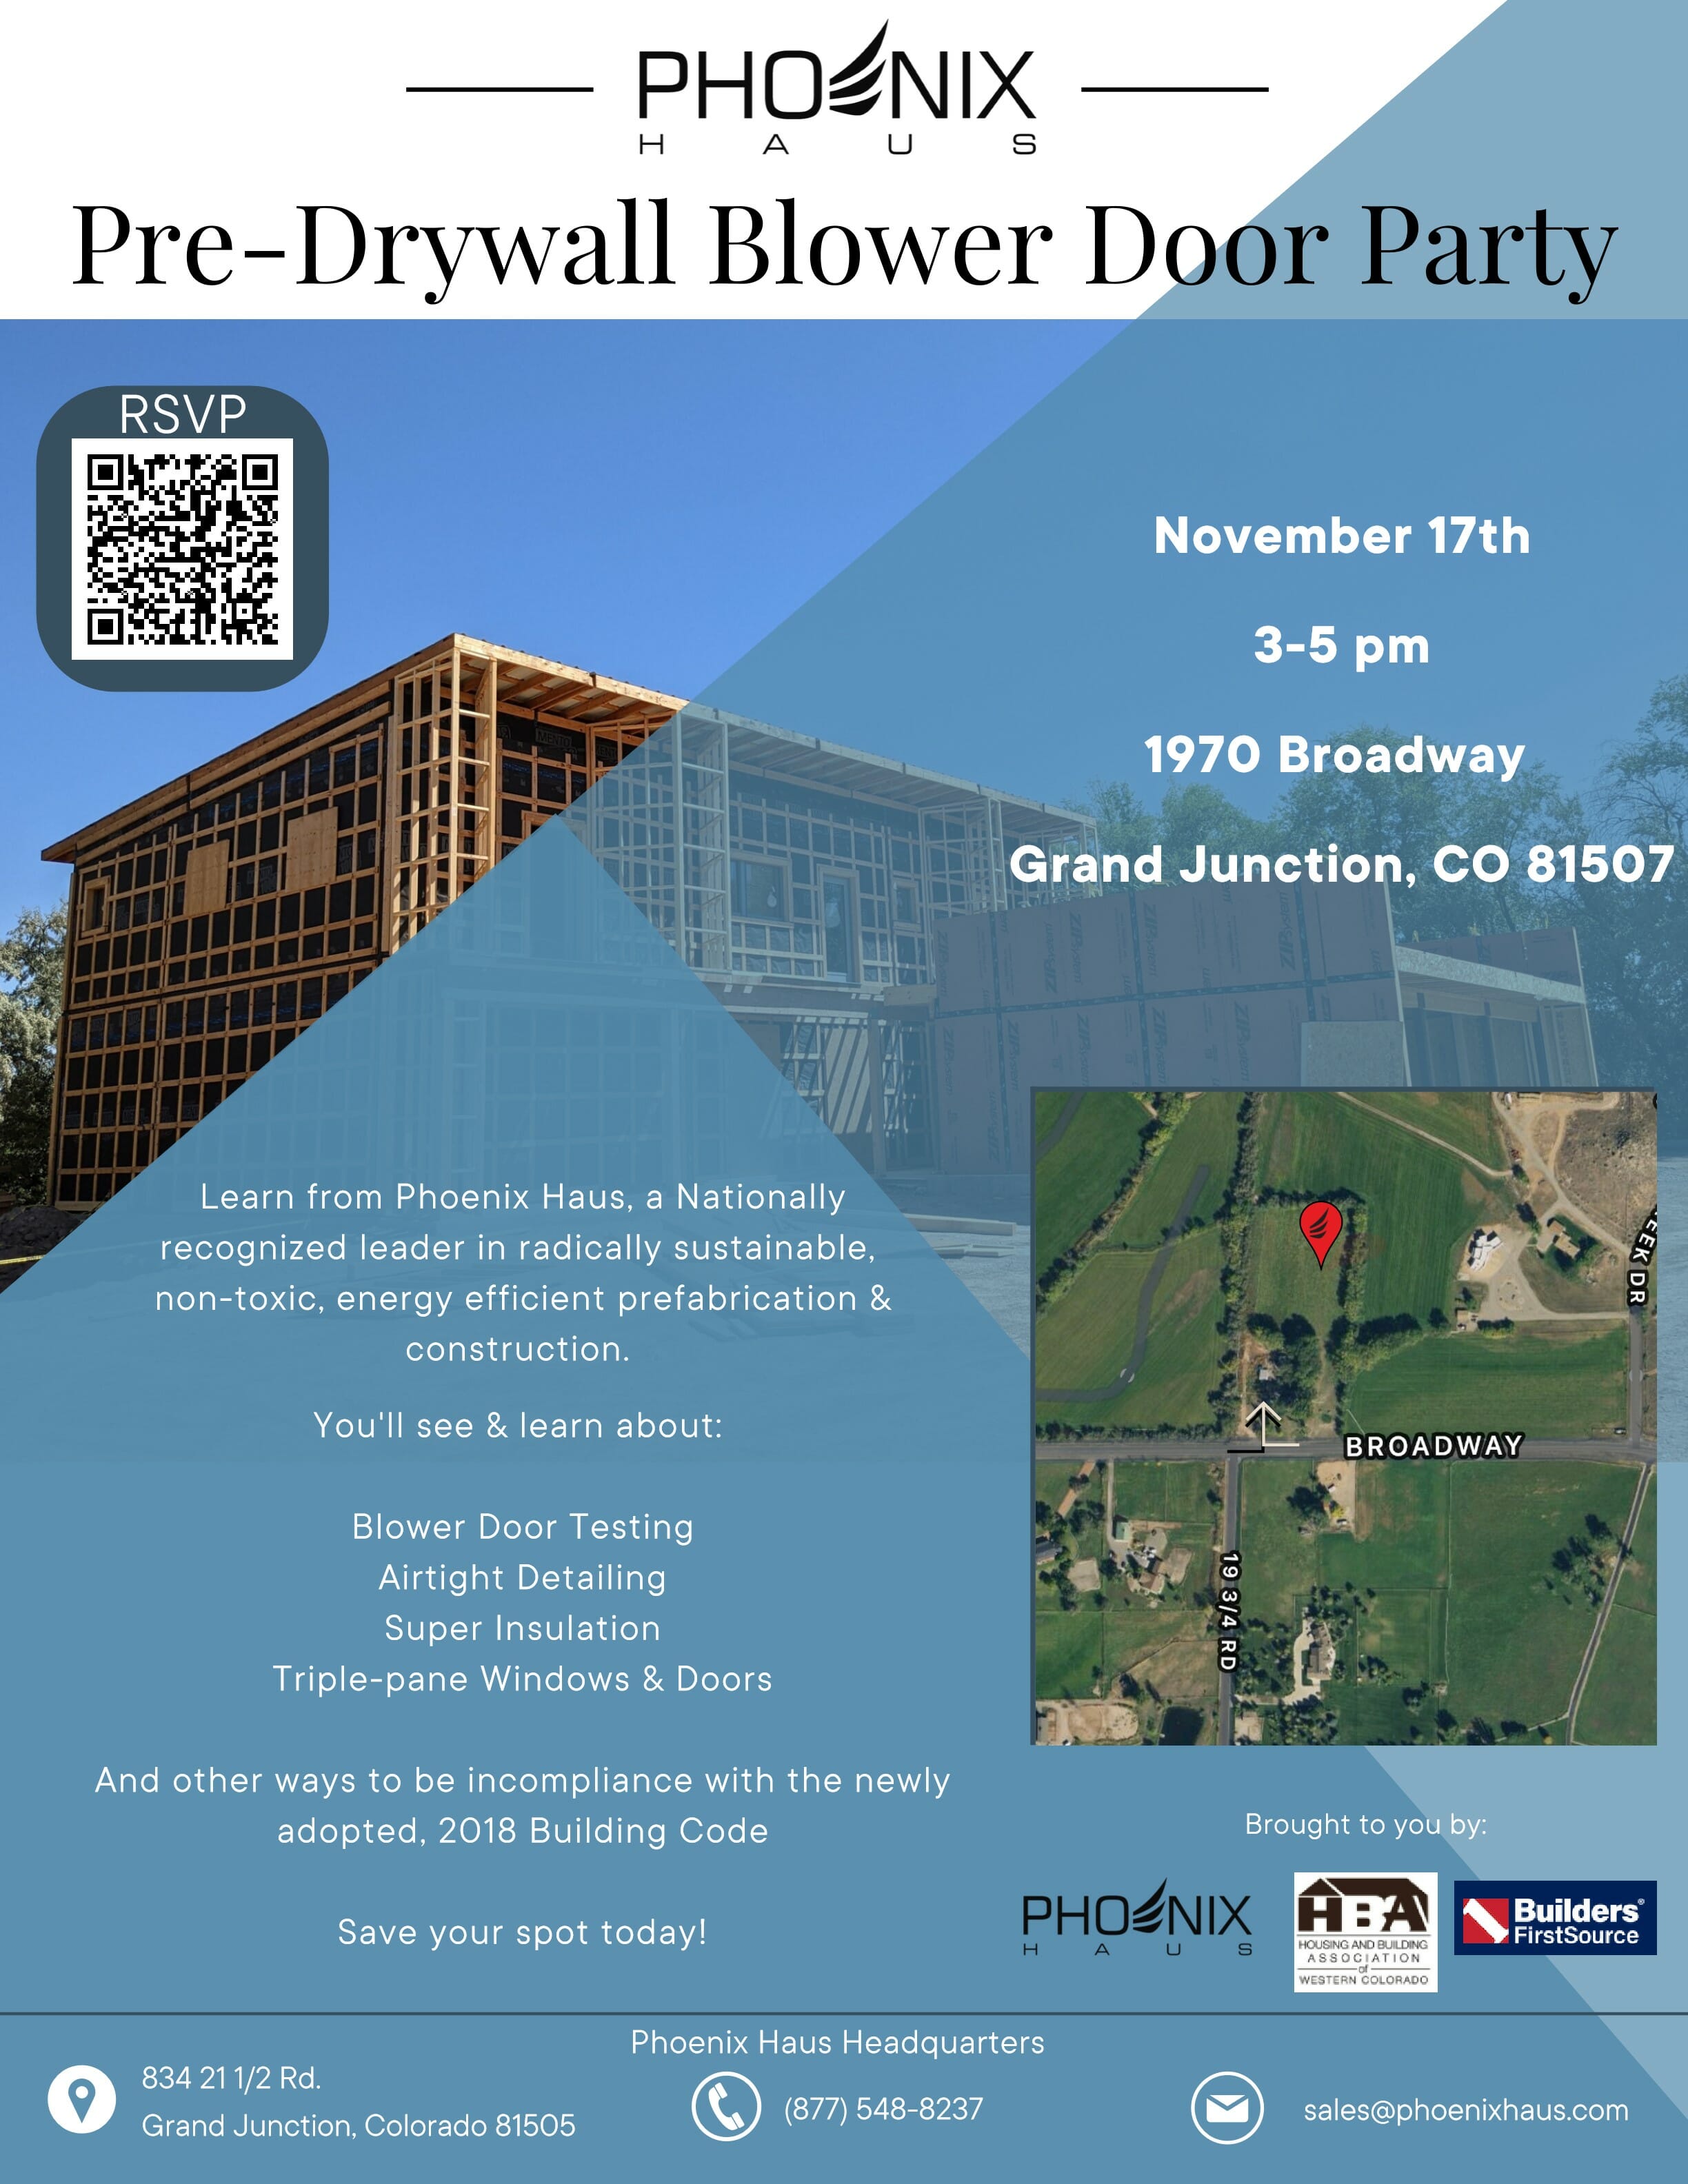 Pre-Drywall Blower Door Party Flyer_1